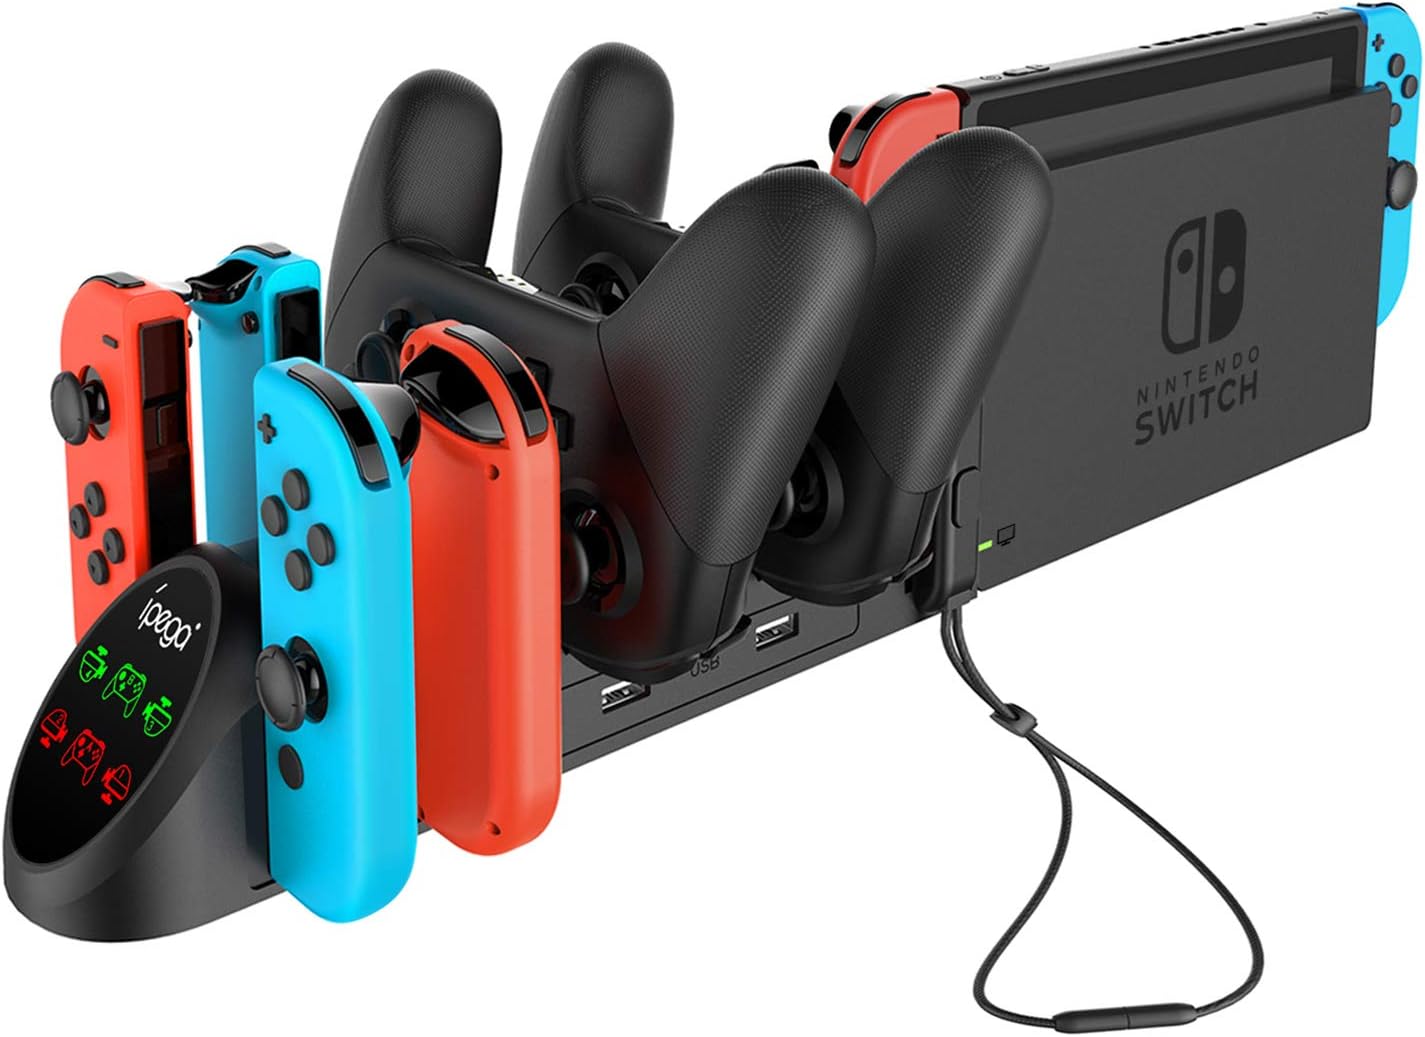 Nintendo Switch charging screen